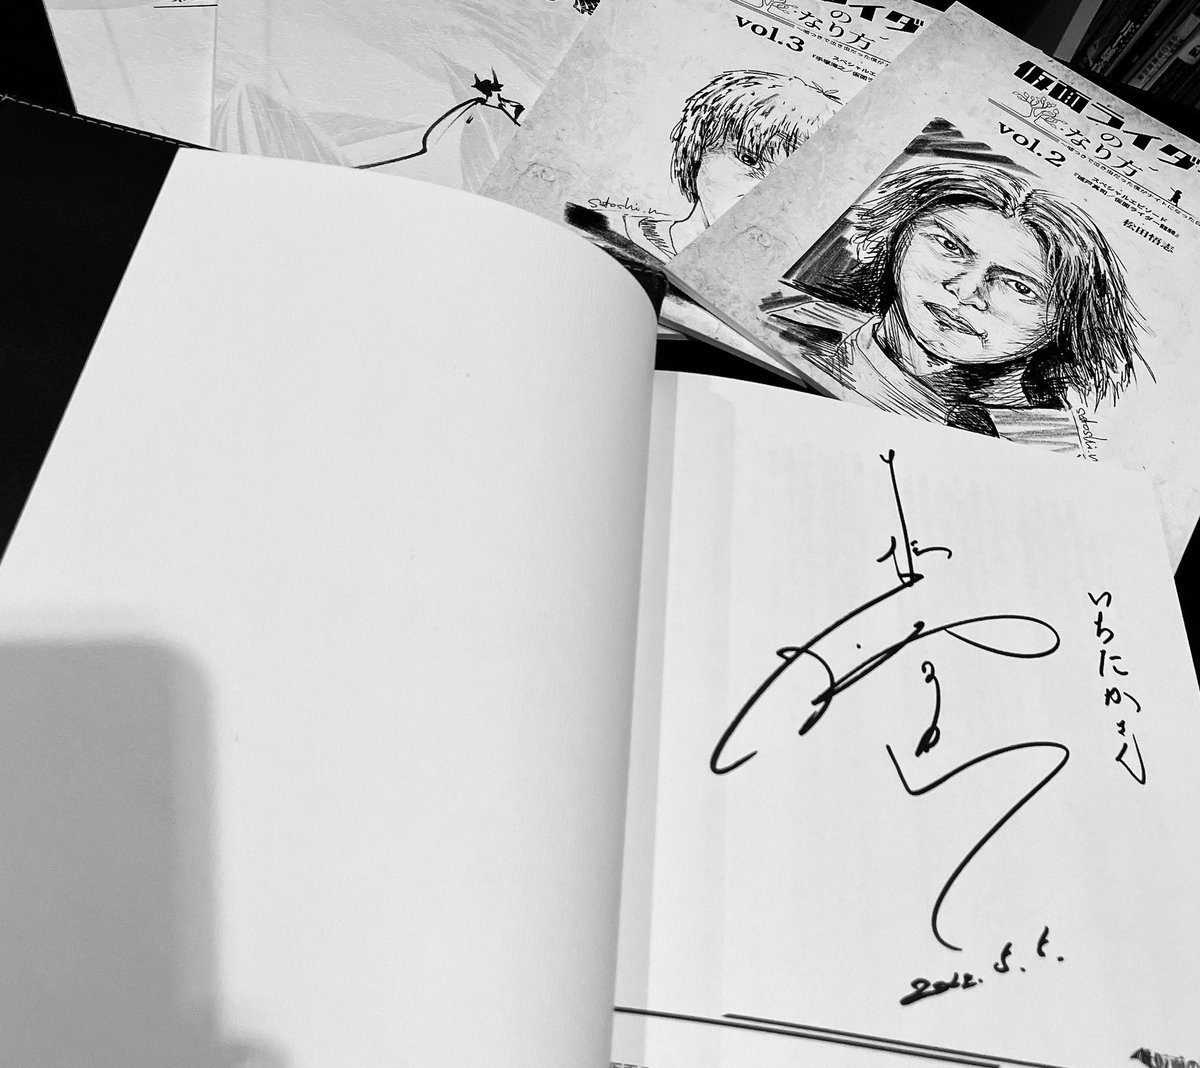 仮面ライダーナイト/松田悟志さんの直筆サインをipadと書籍に頂けました…震えてます 最高です 宝物です…! 